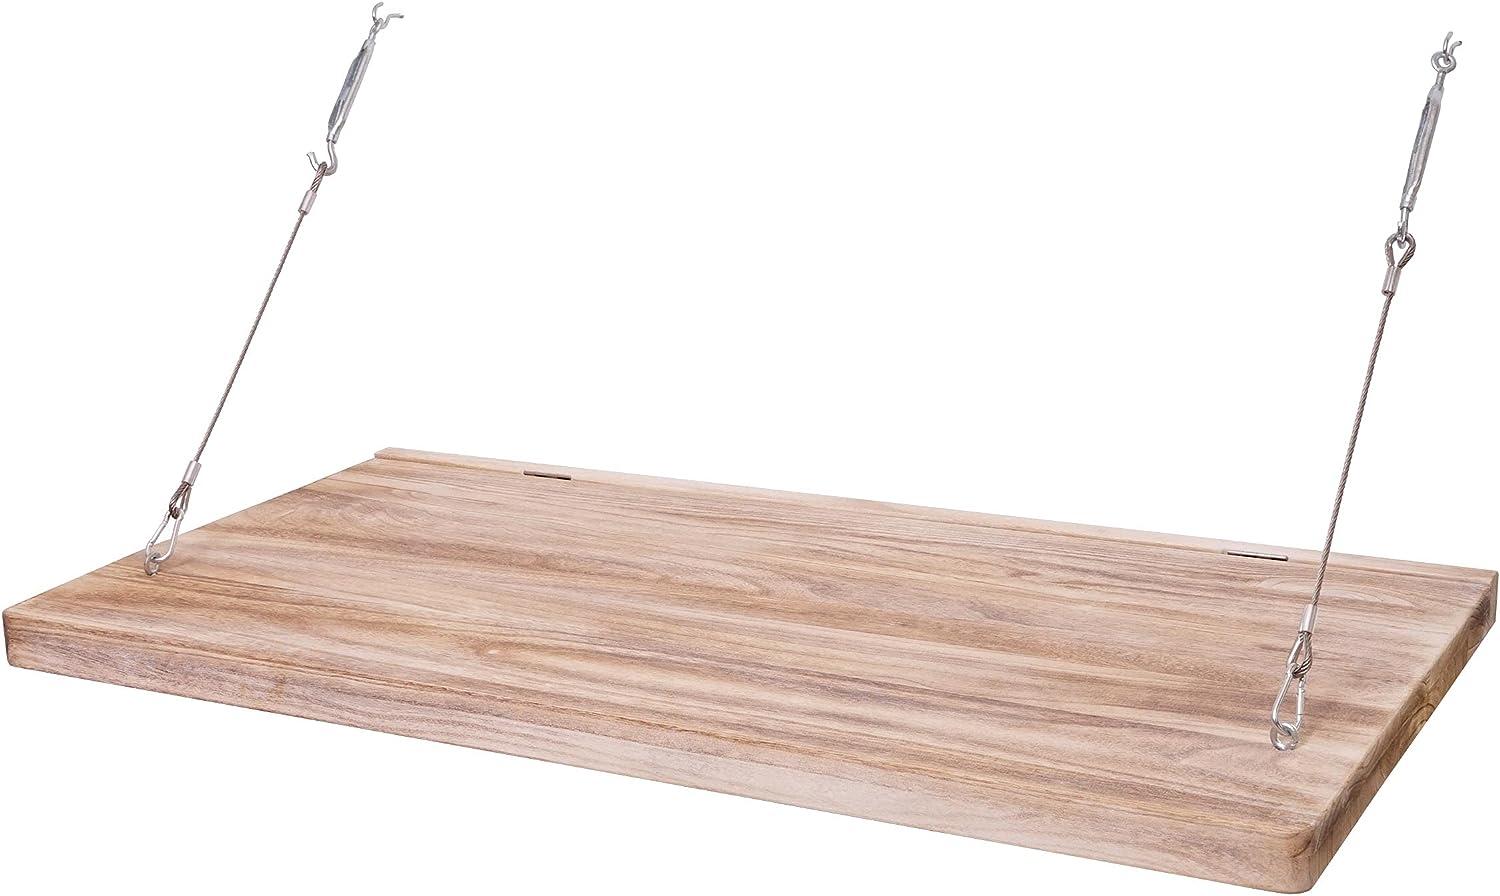 Wandtisch HWC-H48, Wandklapptisch Wandregal Tisch mit Tafel, klappbar Massiv-Holz ~ 120x60cm Bild 1